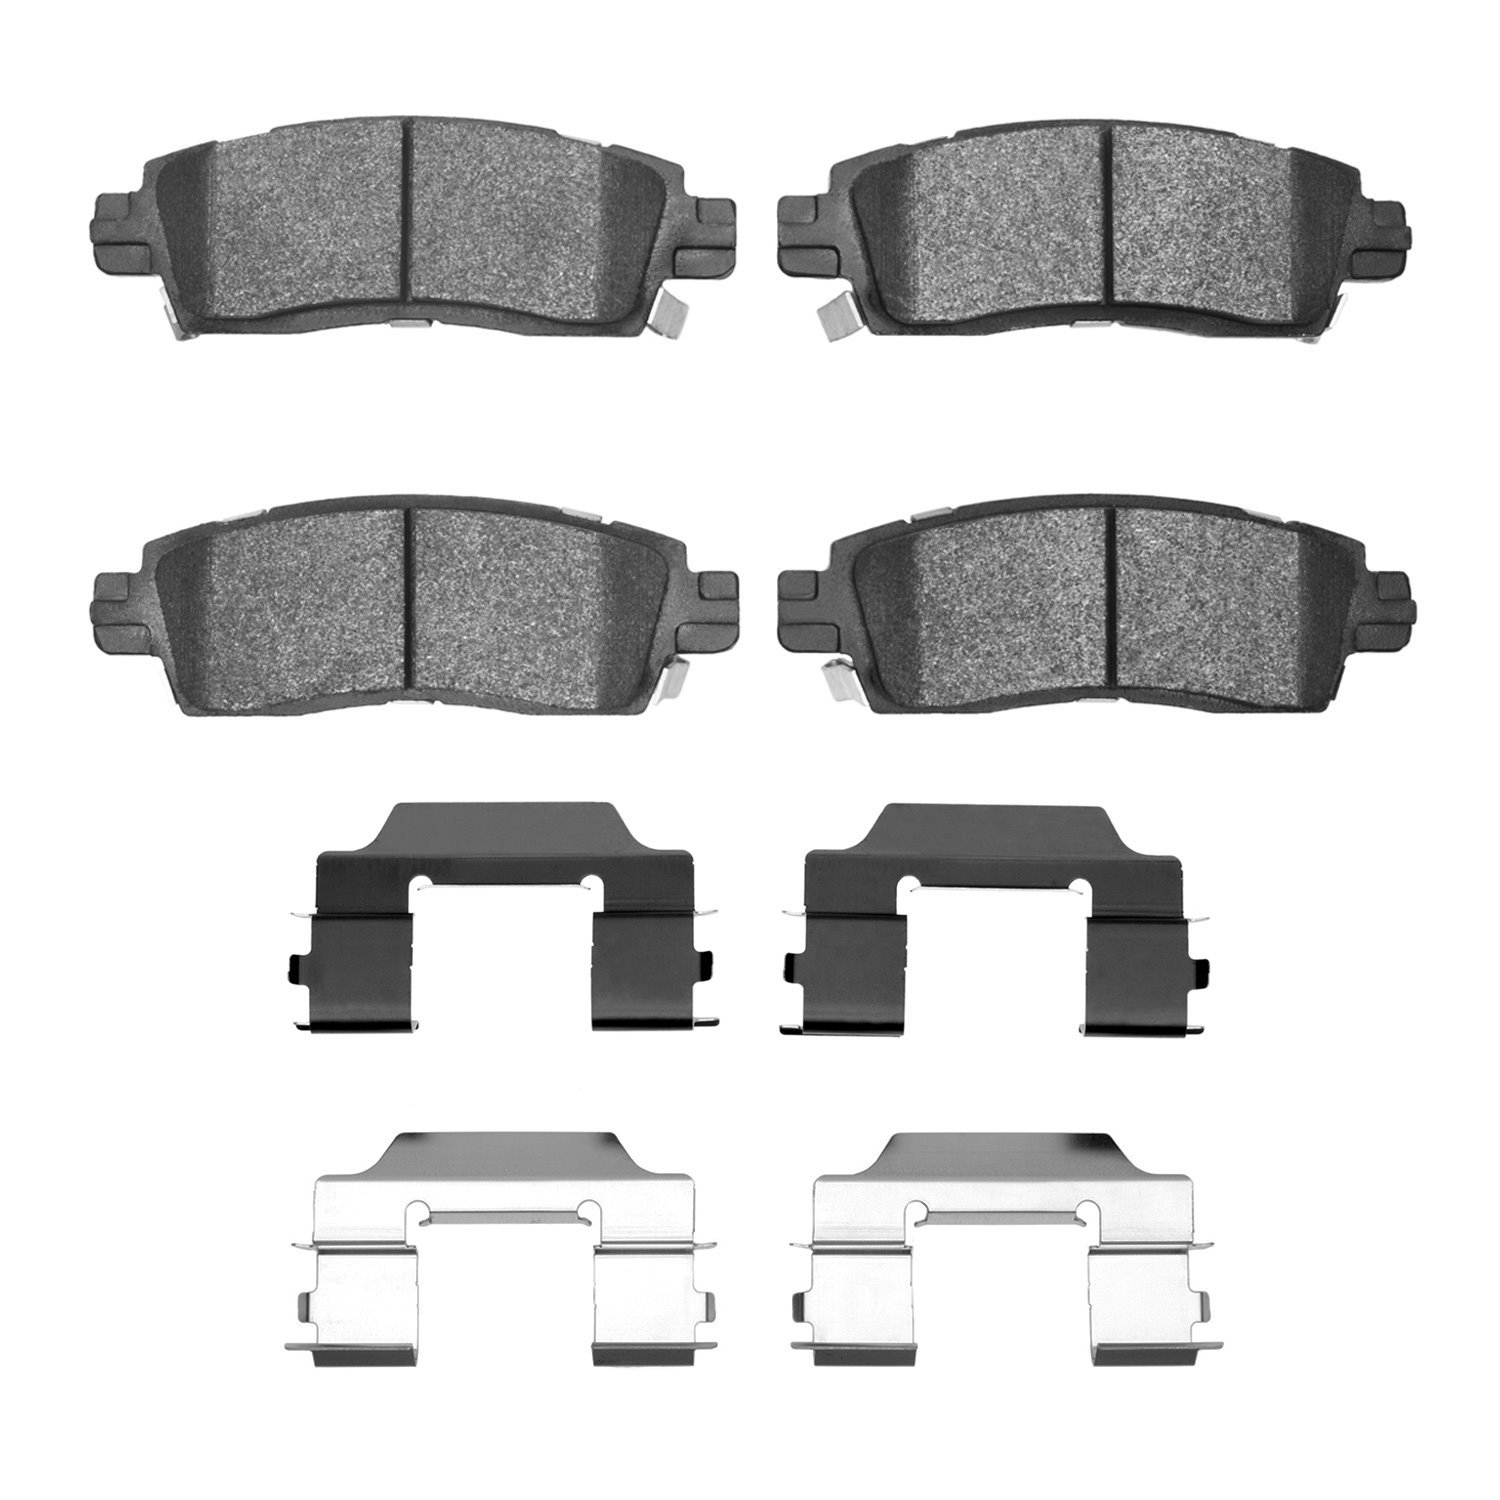 1600-0883-01 5000 Euro Ceramic Brake Pads & Hardware Kit, 2002-2019 GM, Position: Rear